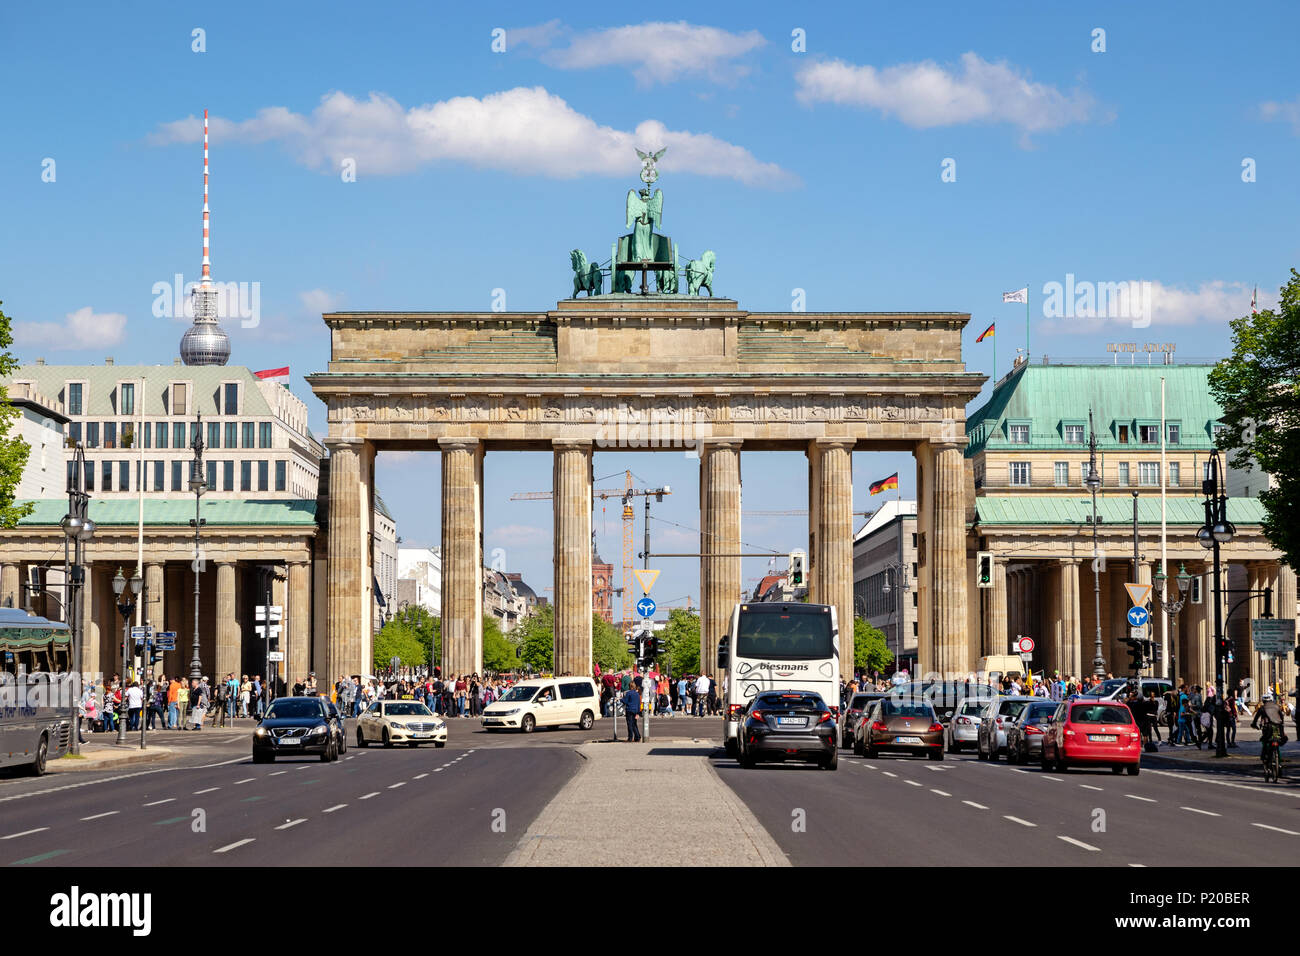 Berlino, Germania - 28 Aprile 2018: il famoso punto di riferimento tedesco e il simbolo nazionale Brandenburger Tor (Porta di Brandeburgo a Berlino. Foto Stock